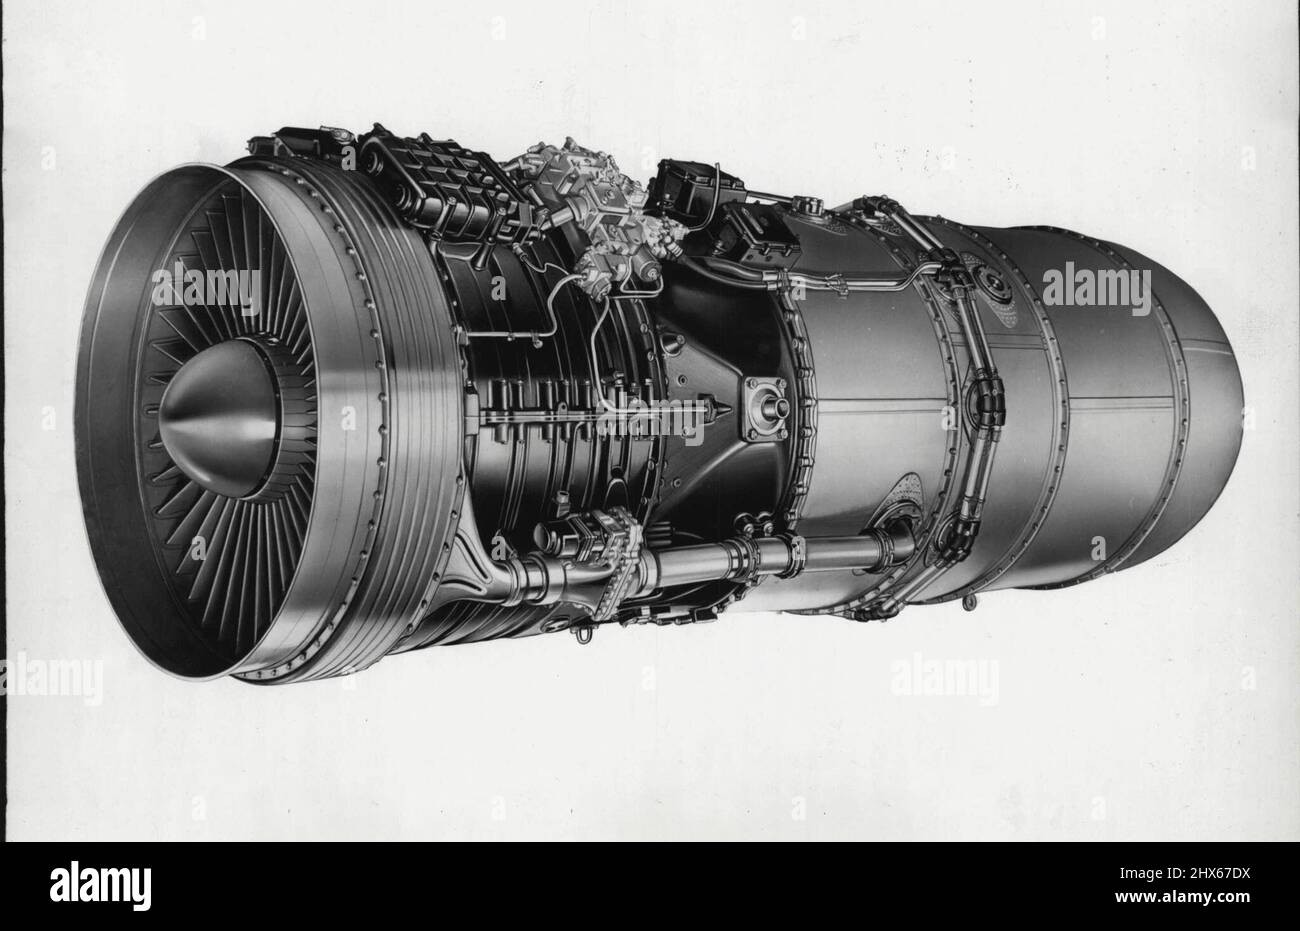 Il motore a getto Rolls-Royce Conway by-pass, il motore aerodinamico più  potente al mondo testato sul tipo. Agosto 29, 1955 Foto stock - Alamy